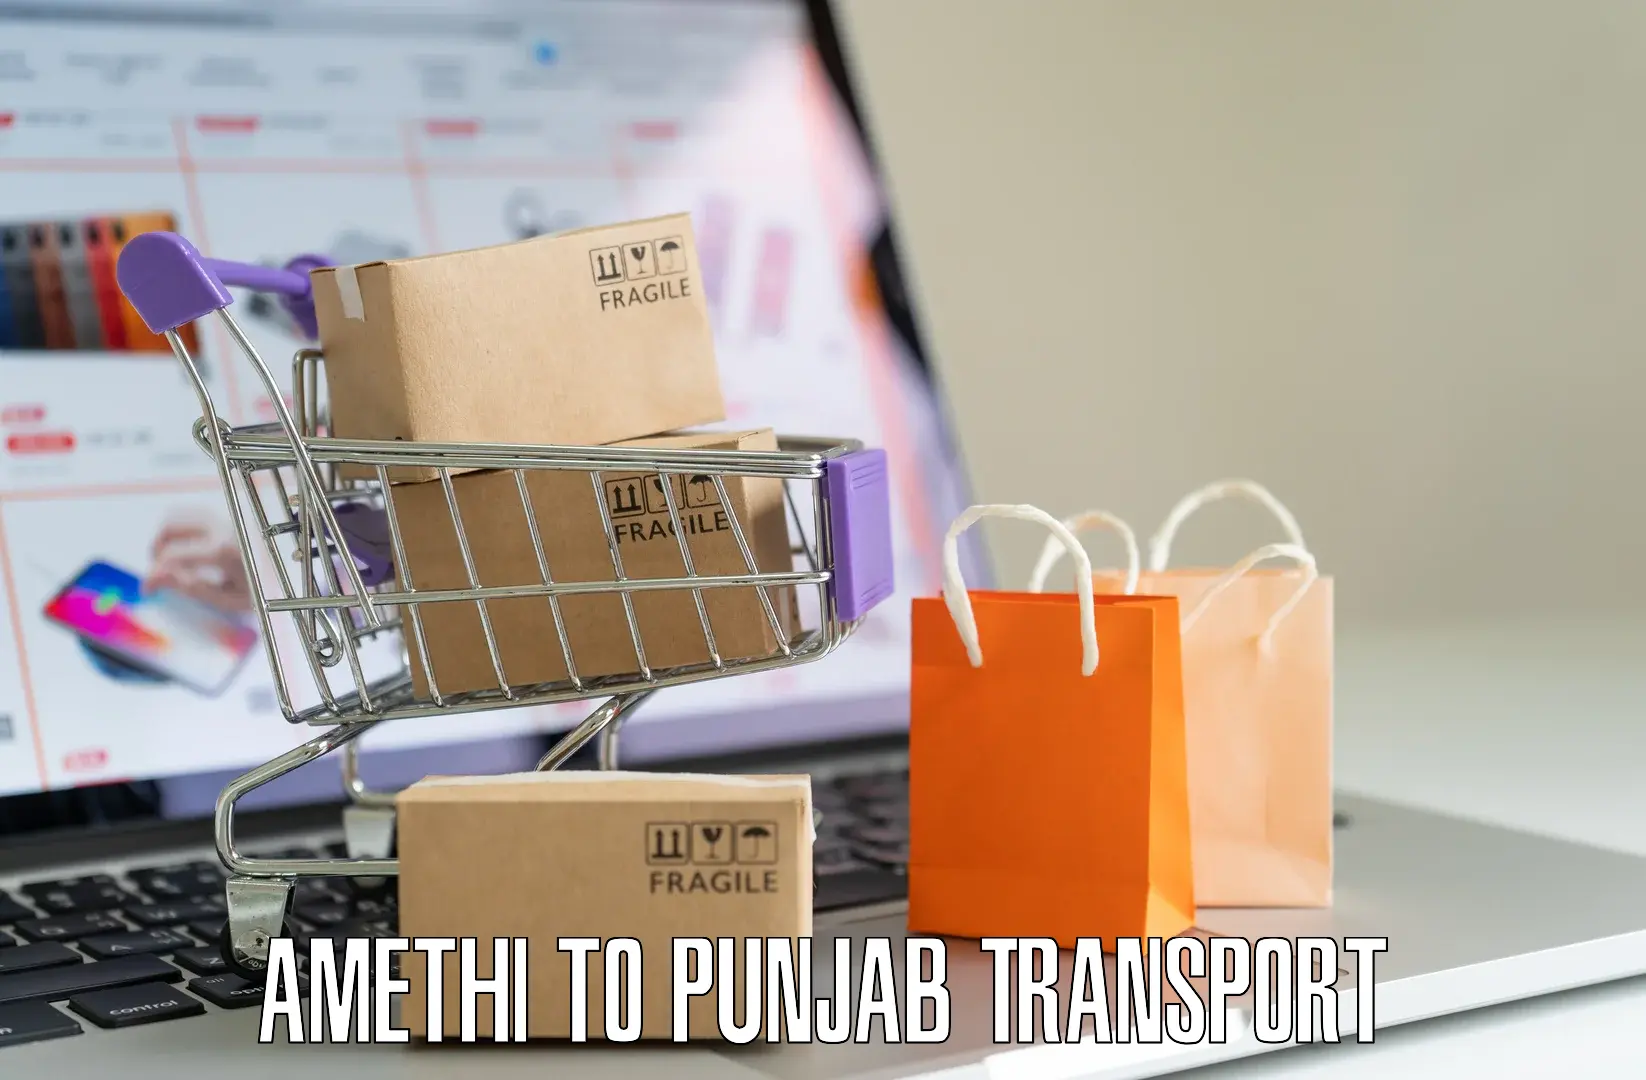 Furniture transport service Amethi to Talwara